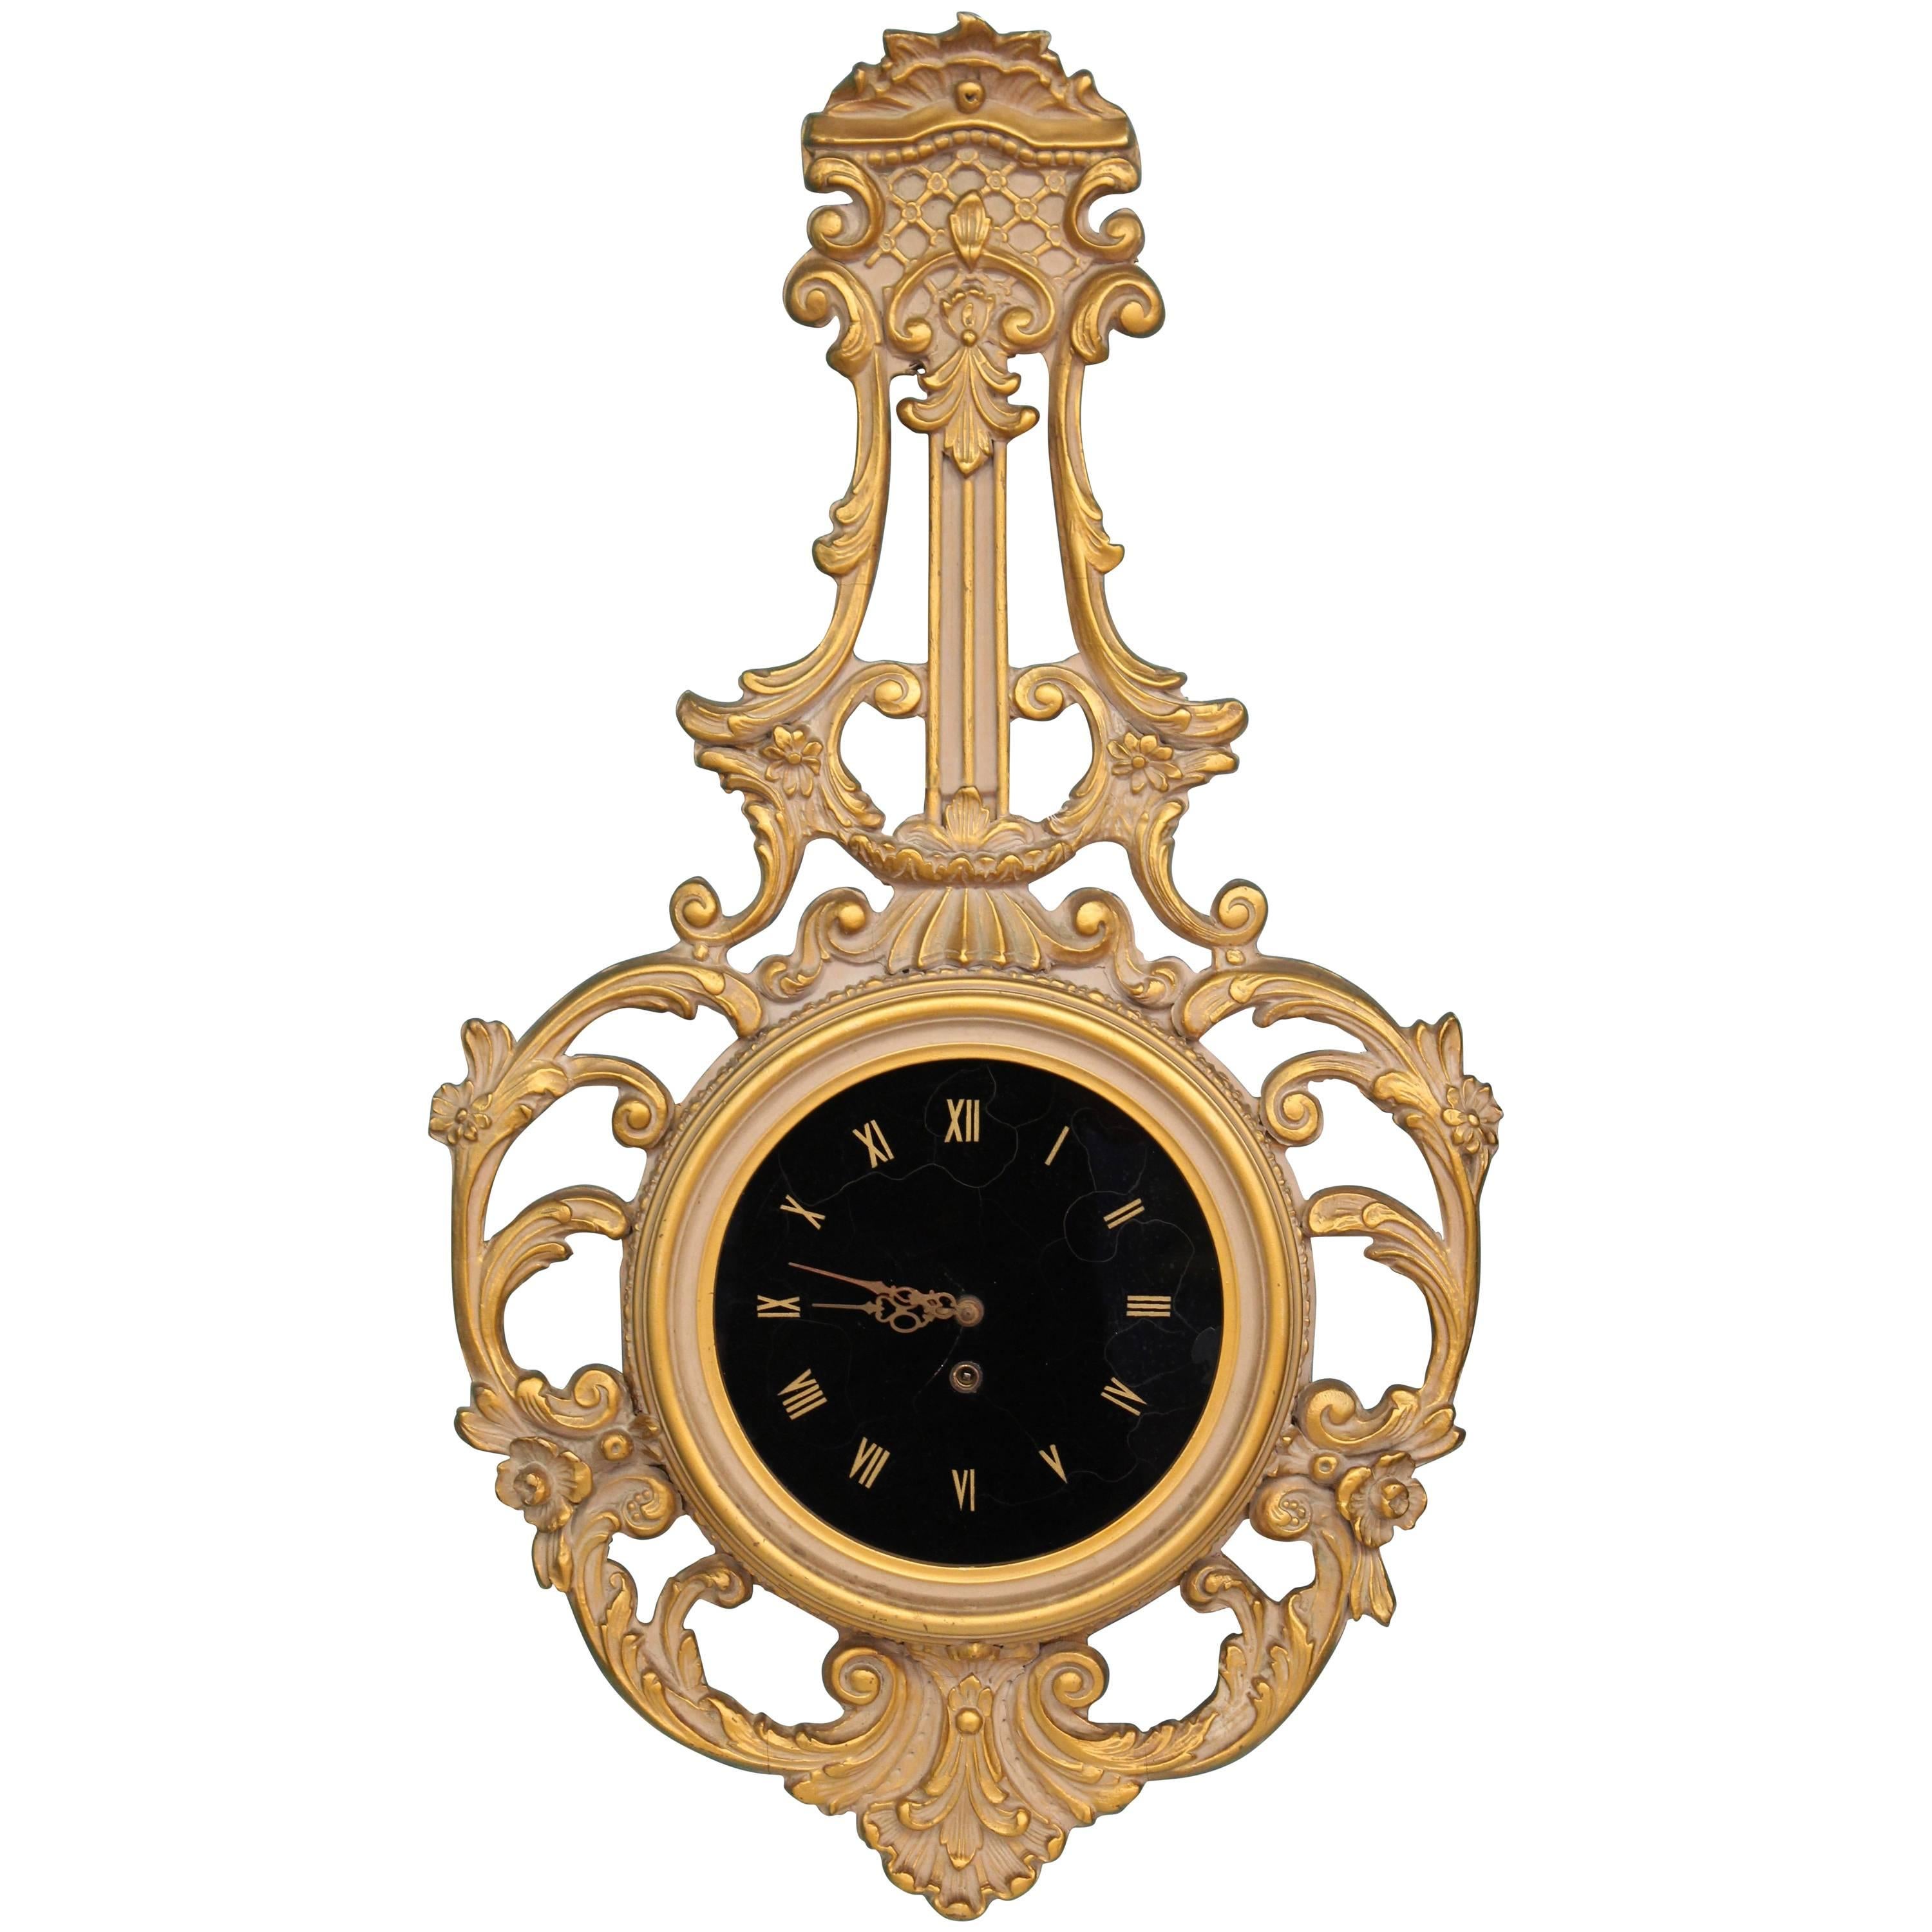 1950s Wall Clock with Églomisé